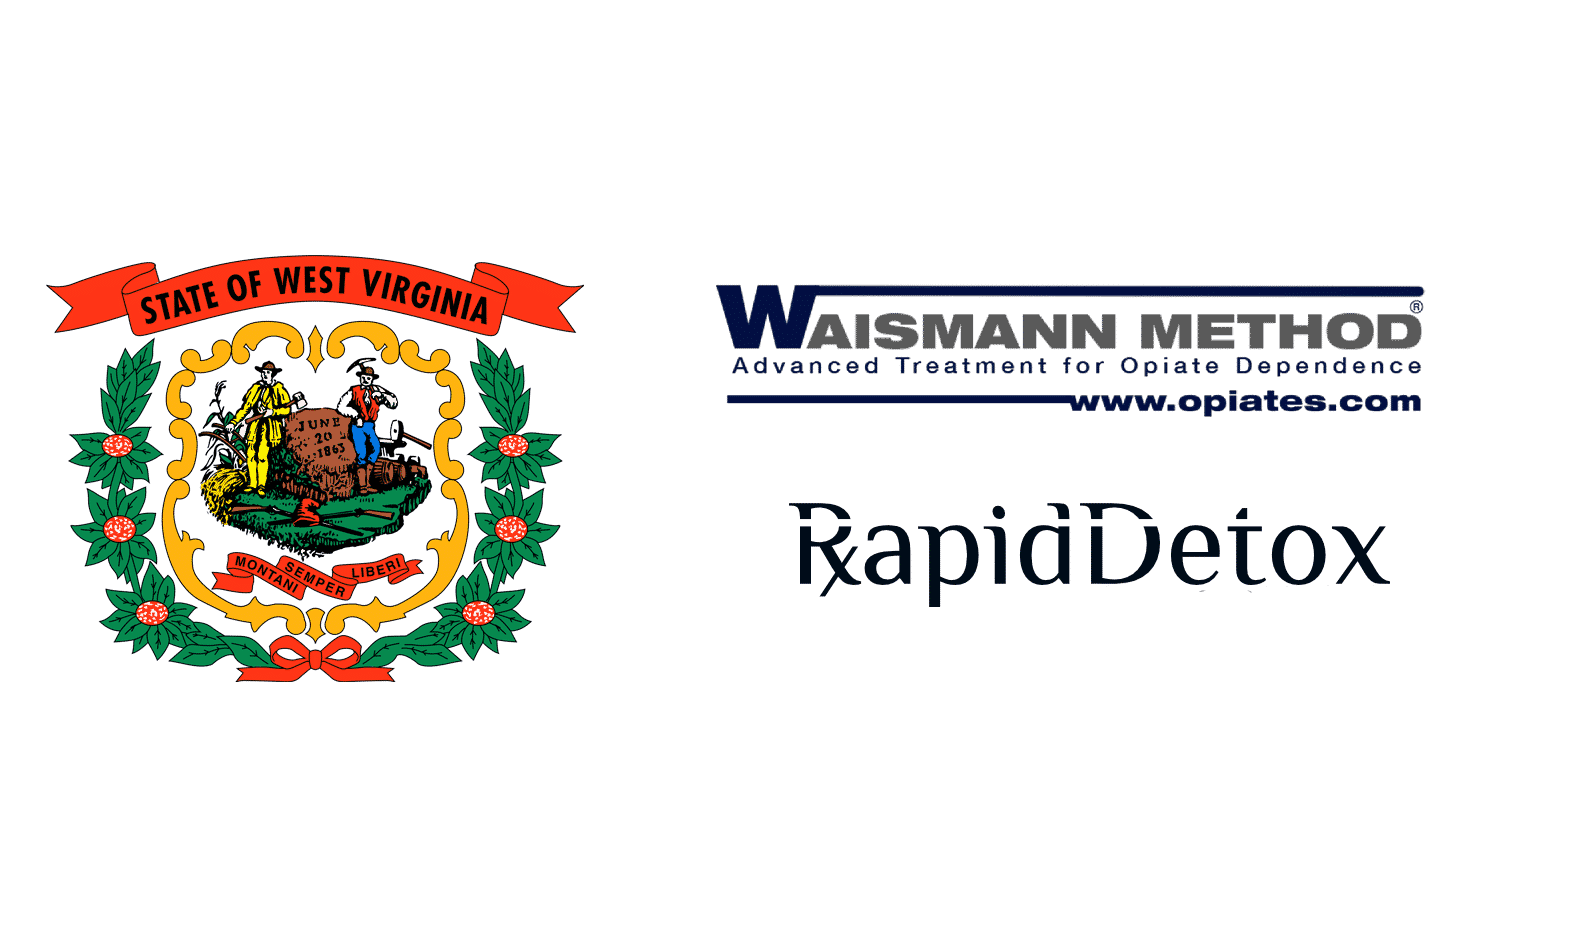 Rapid Detox in west virginia